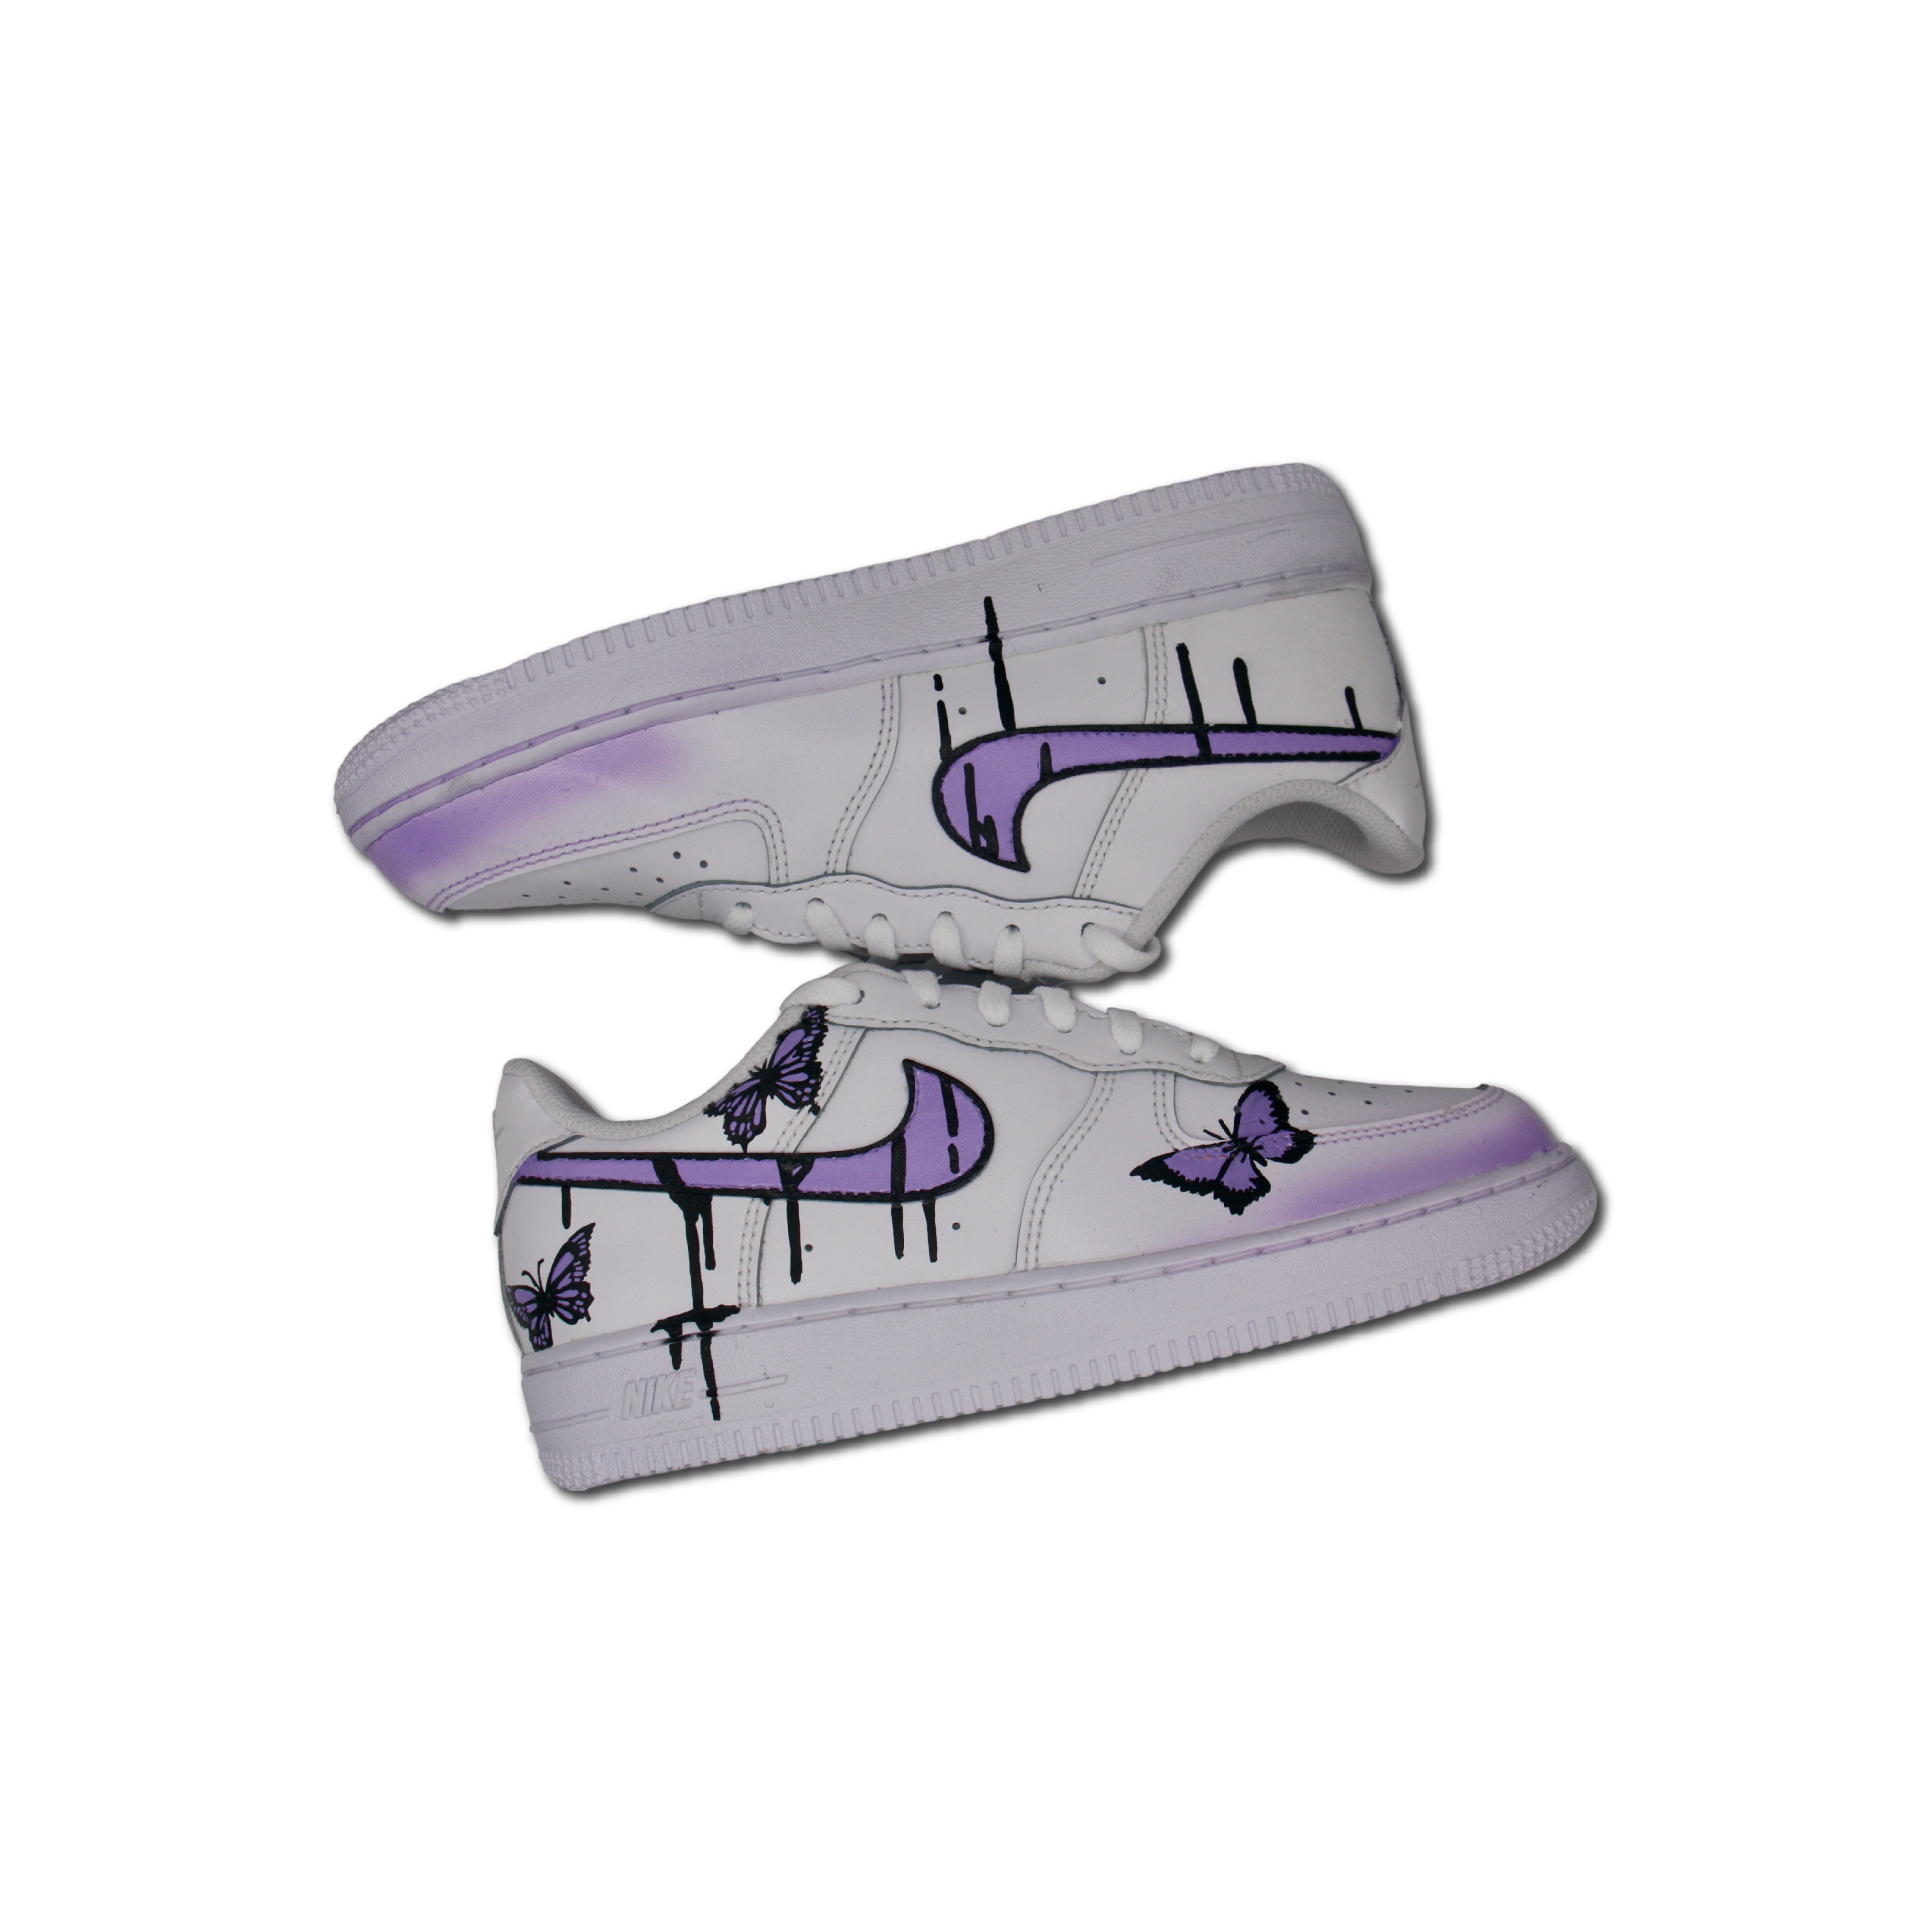 Custom Butterfly + Drip AF1 – Custom Sneakers Portugal